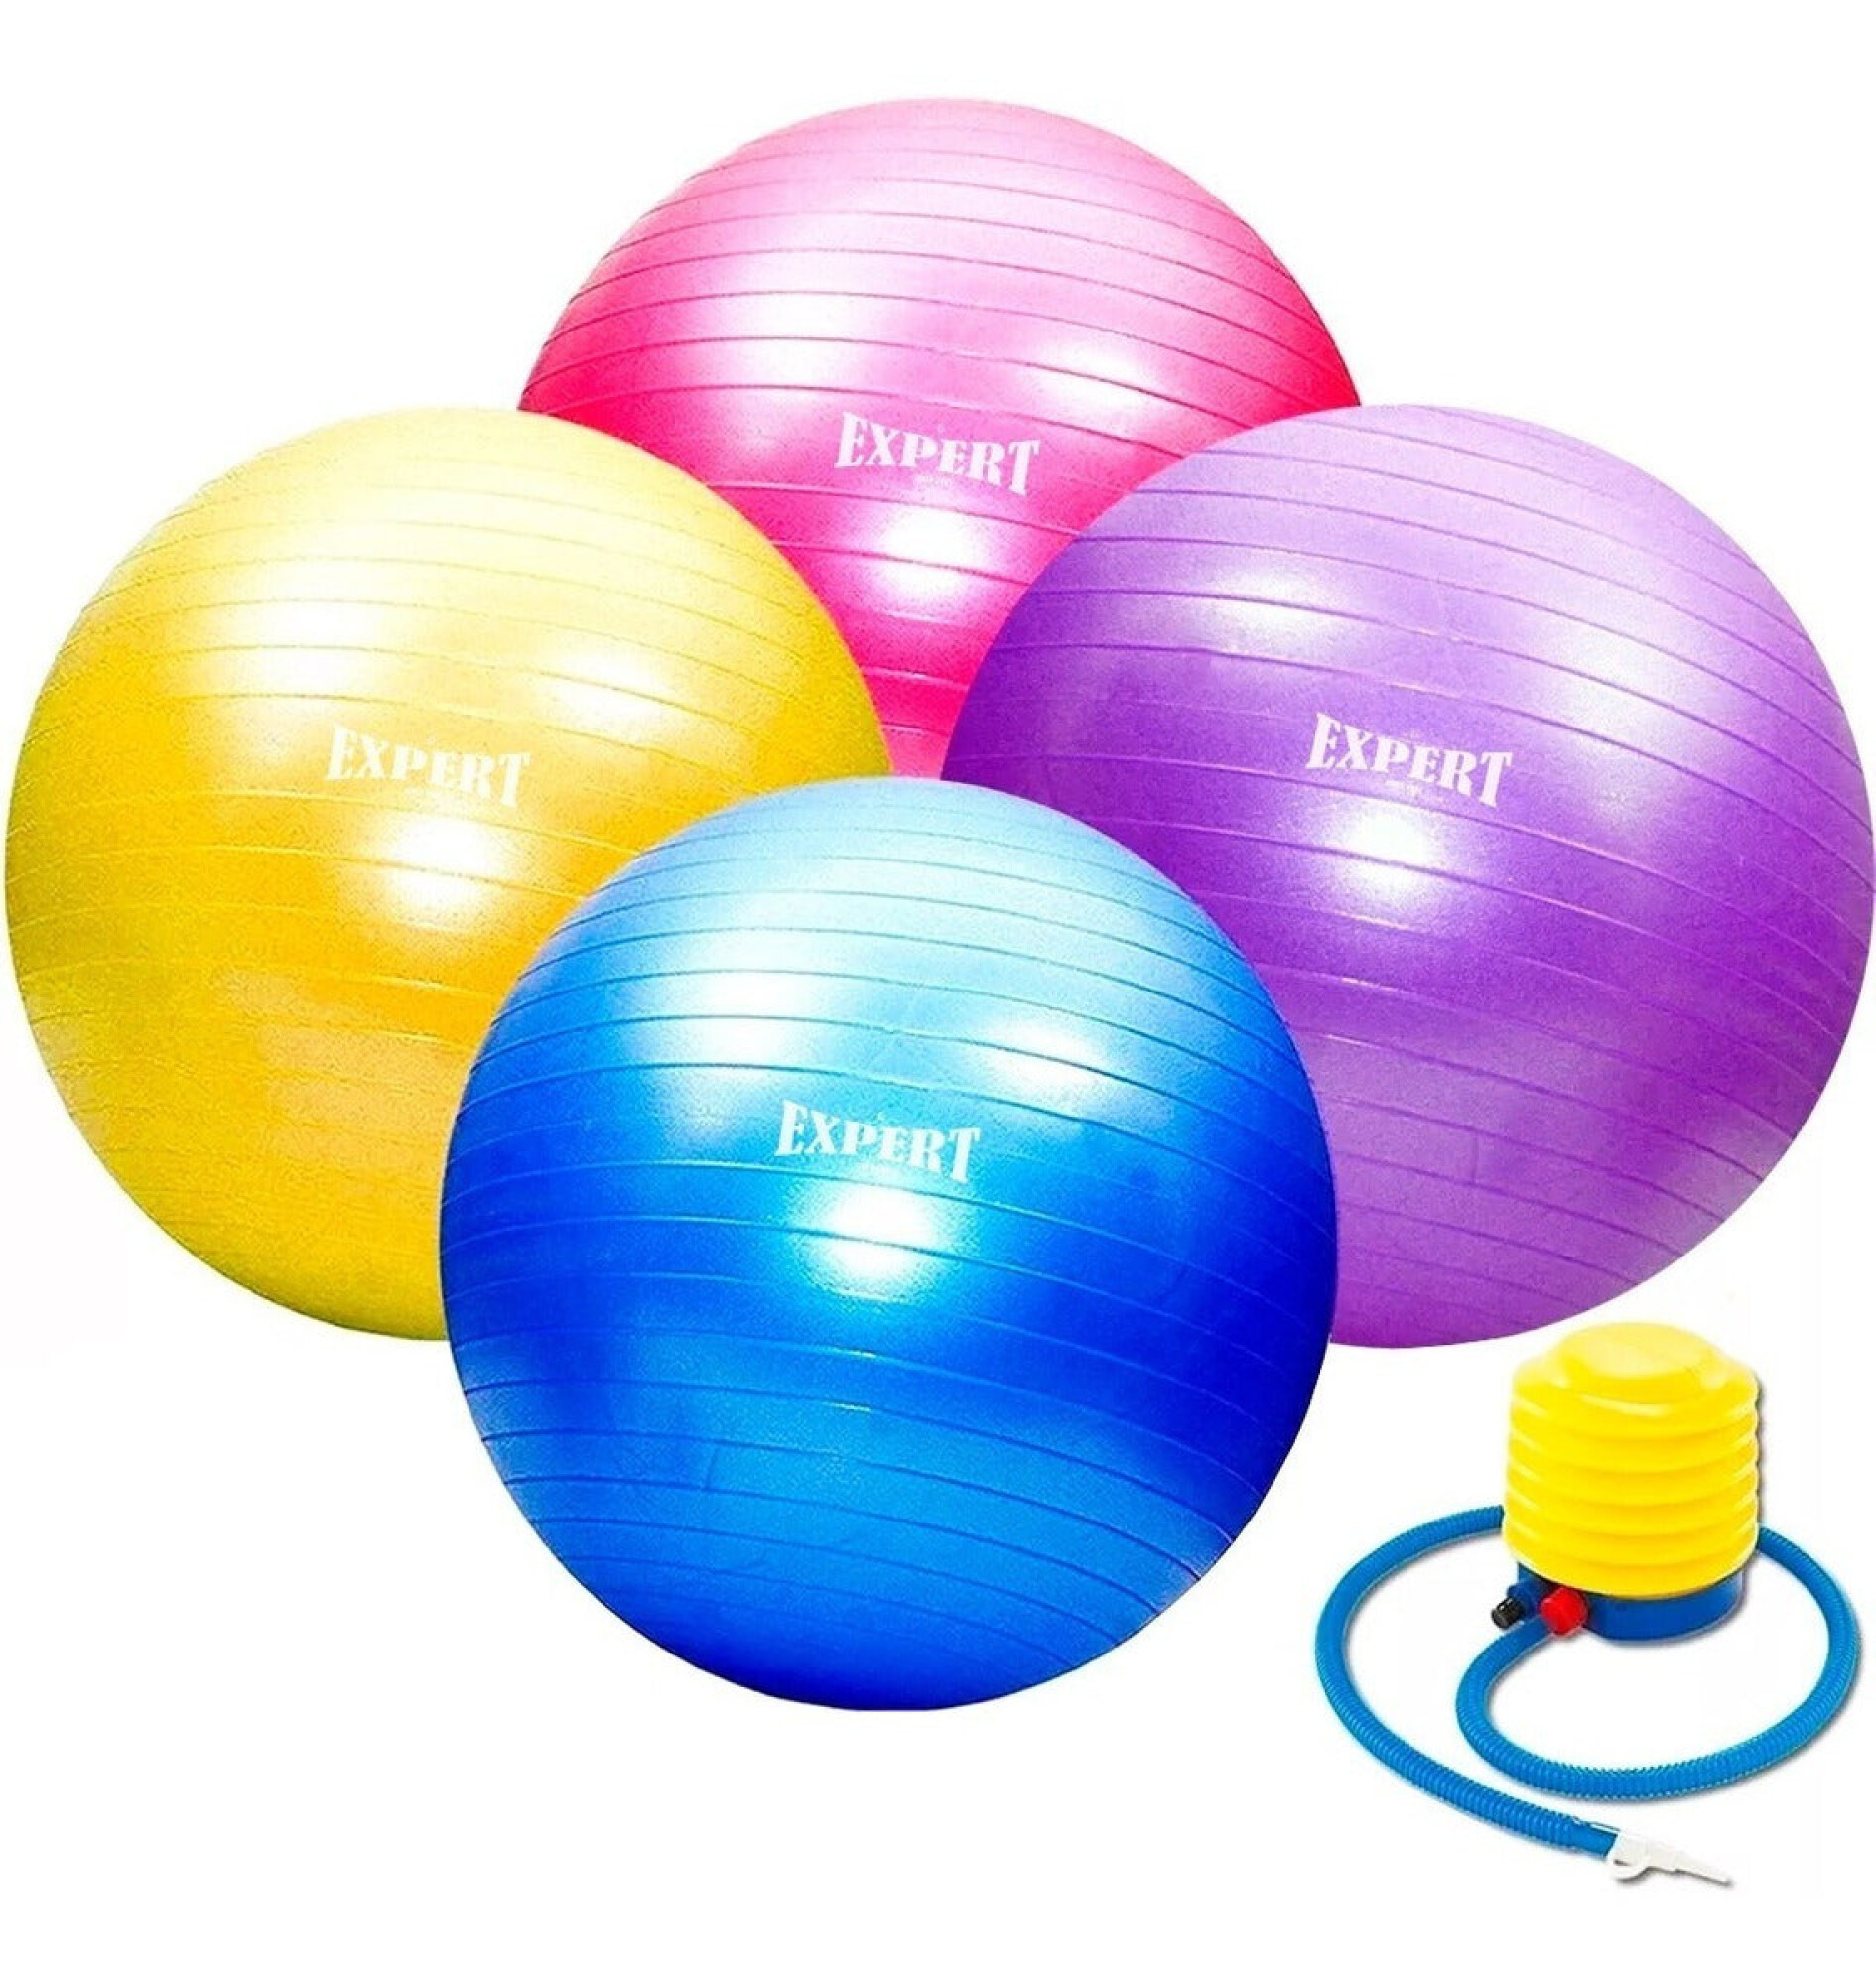 Gym Ball pelota pilates / terapia - NewFitPeru